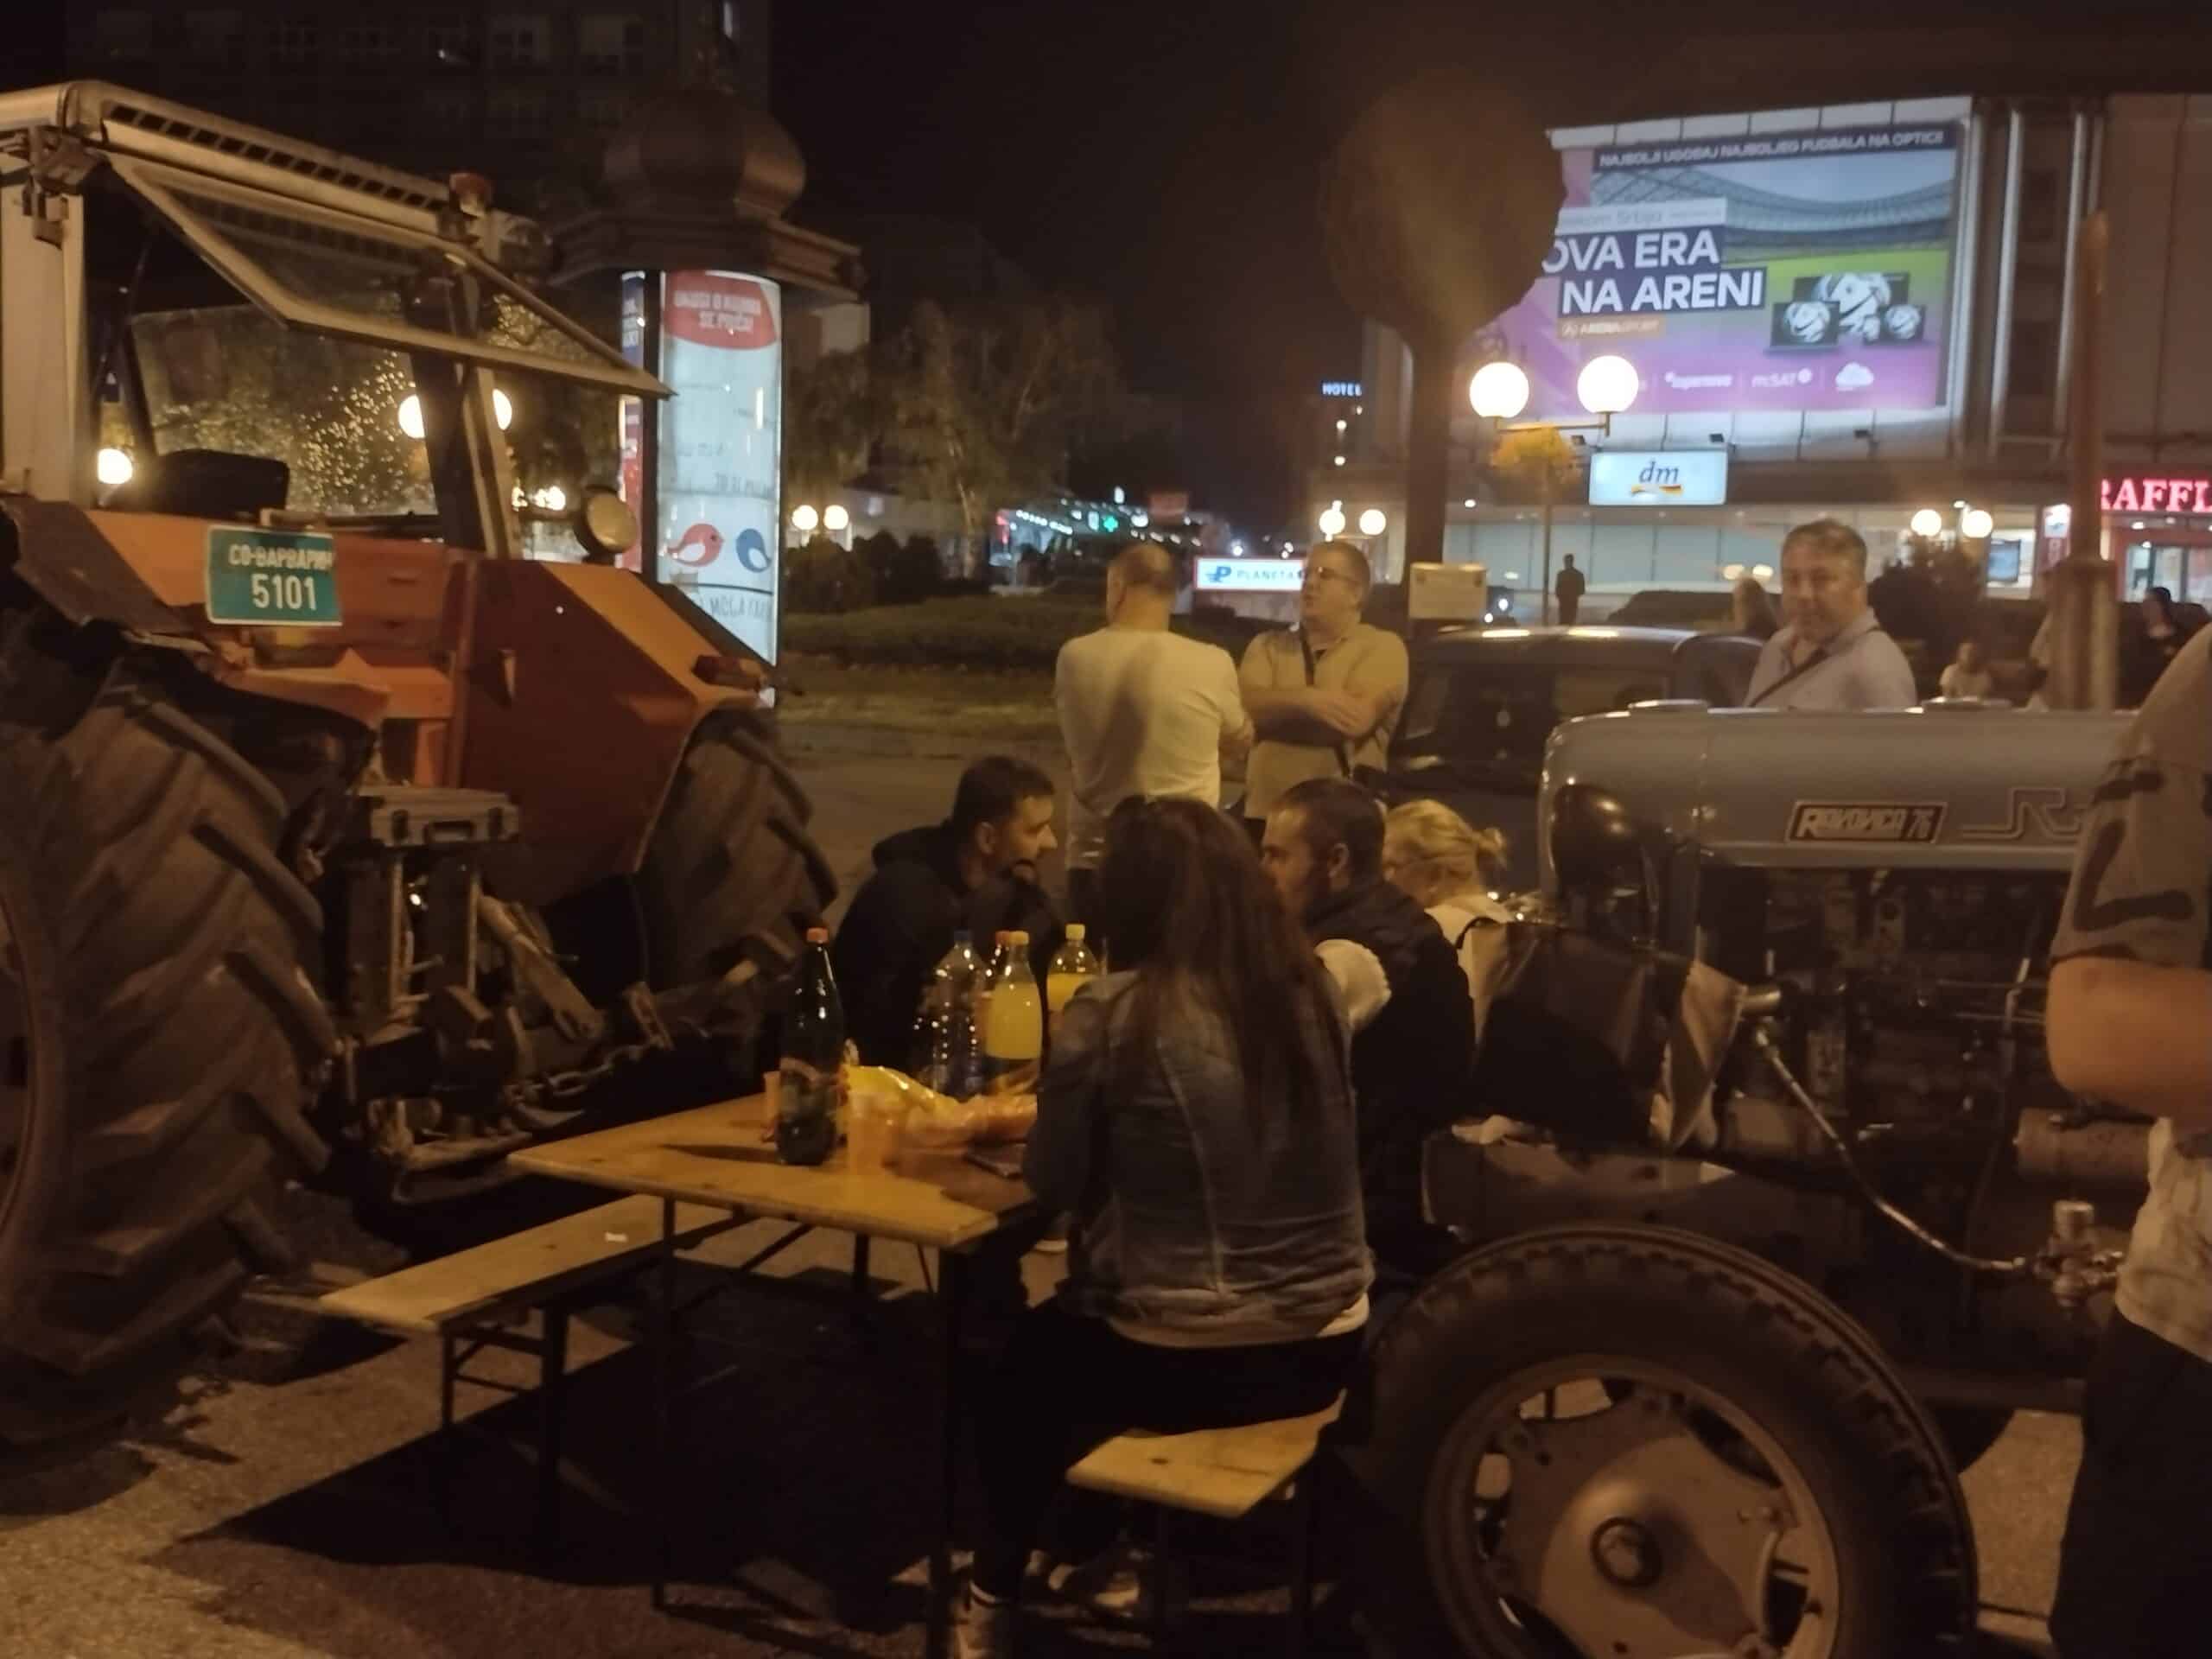 "Da l' je asfalt ili blato, Šumadinac trpi bato": Reporter Danasa proveo noć sa poljoprivrednicima u blokadi Kragujevca 5